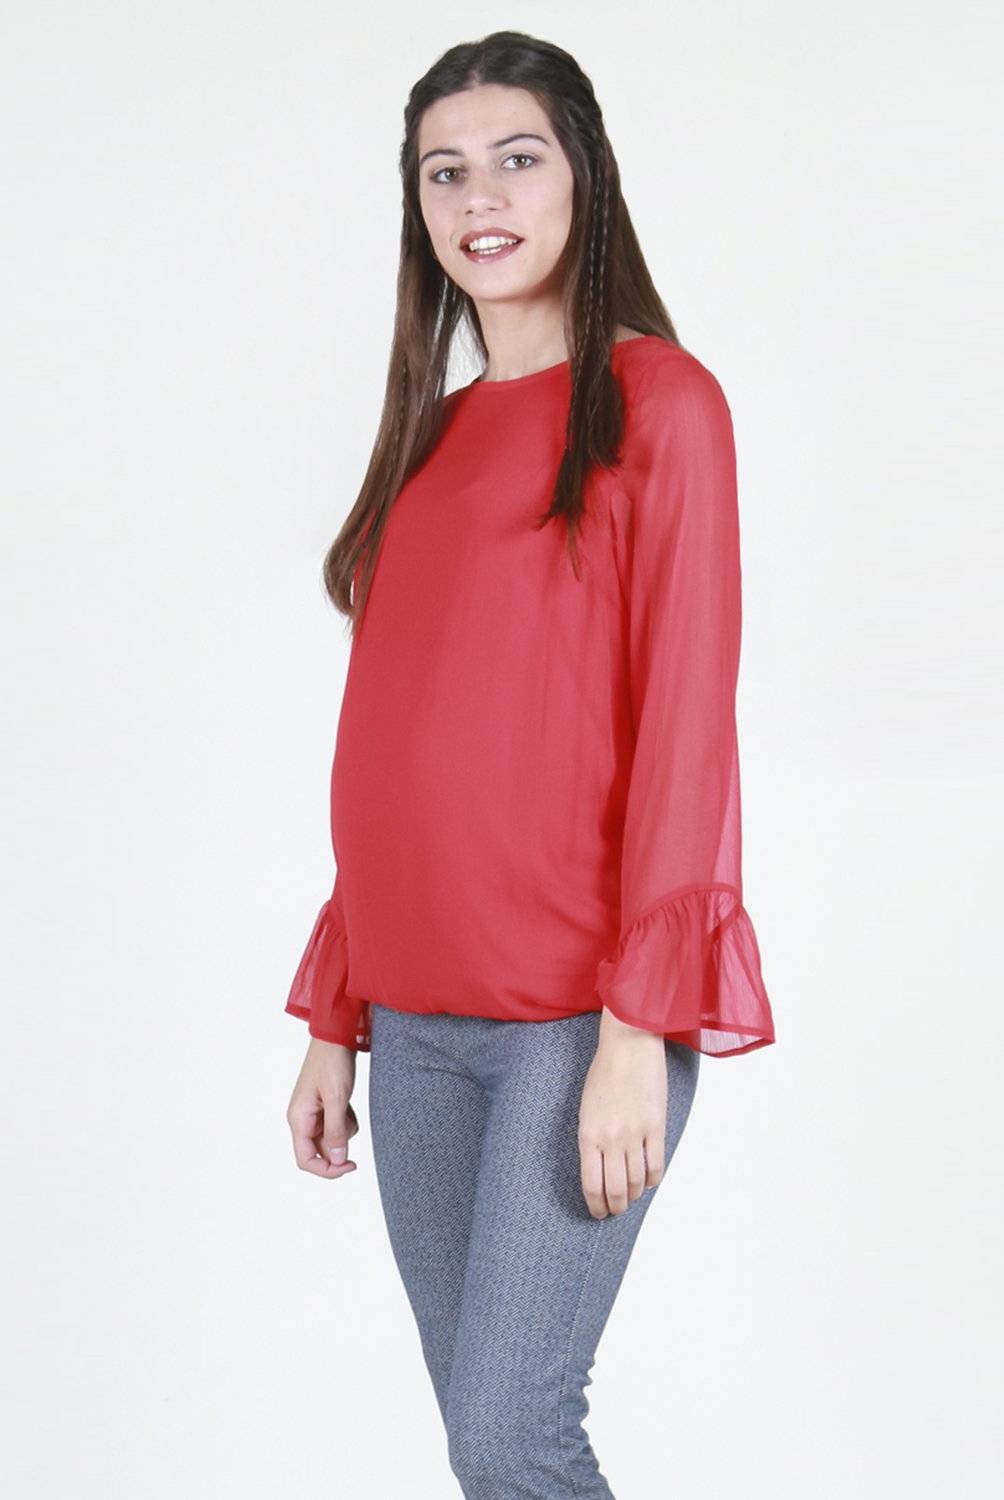 OHMA! BARCELONA - Blusa Maternal Georgette Con Camiseta Interior